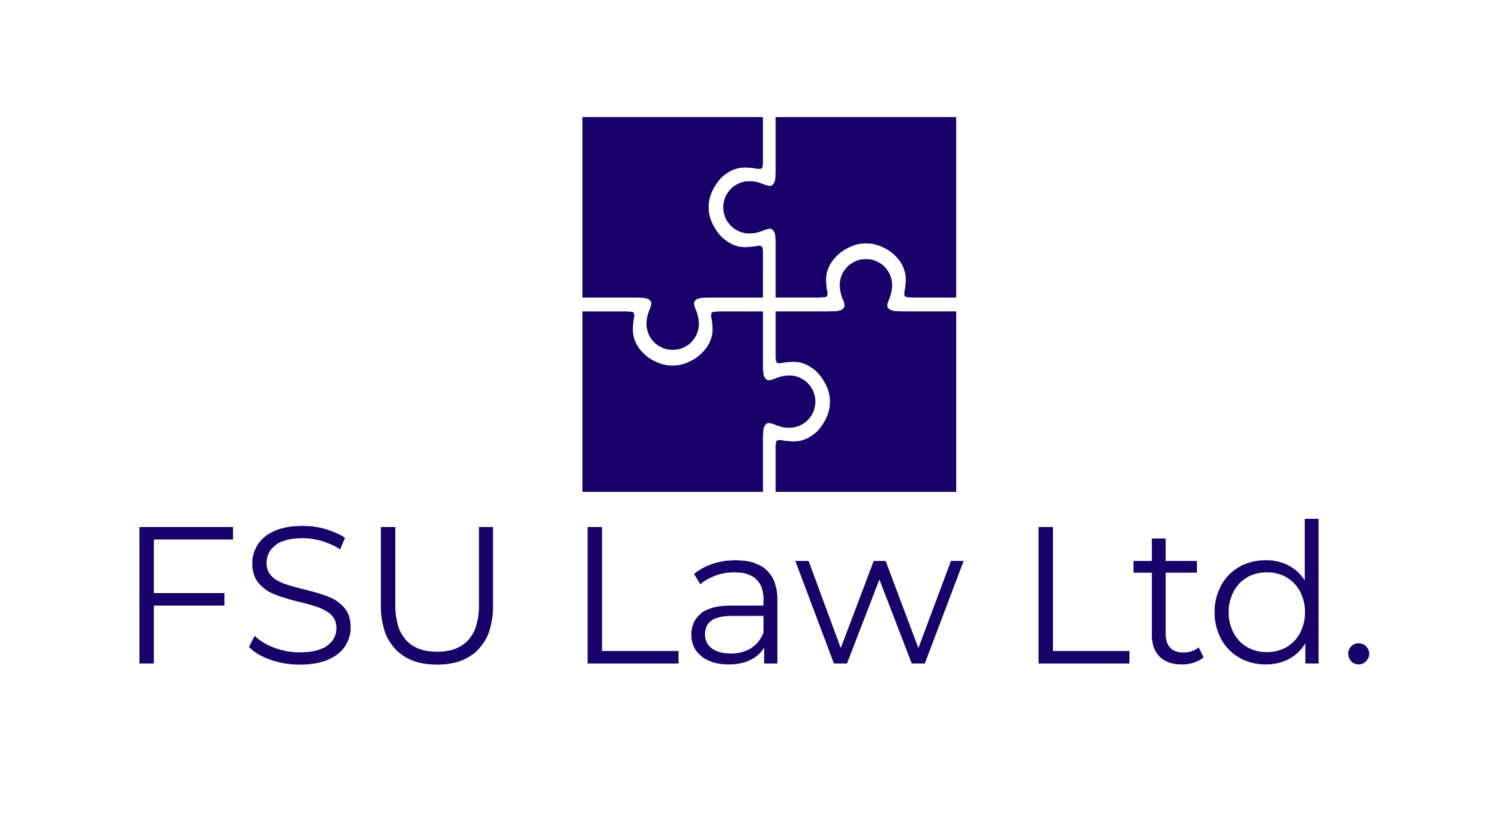 FSU Law Ltd